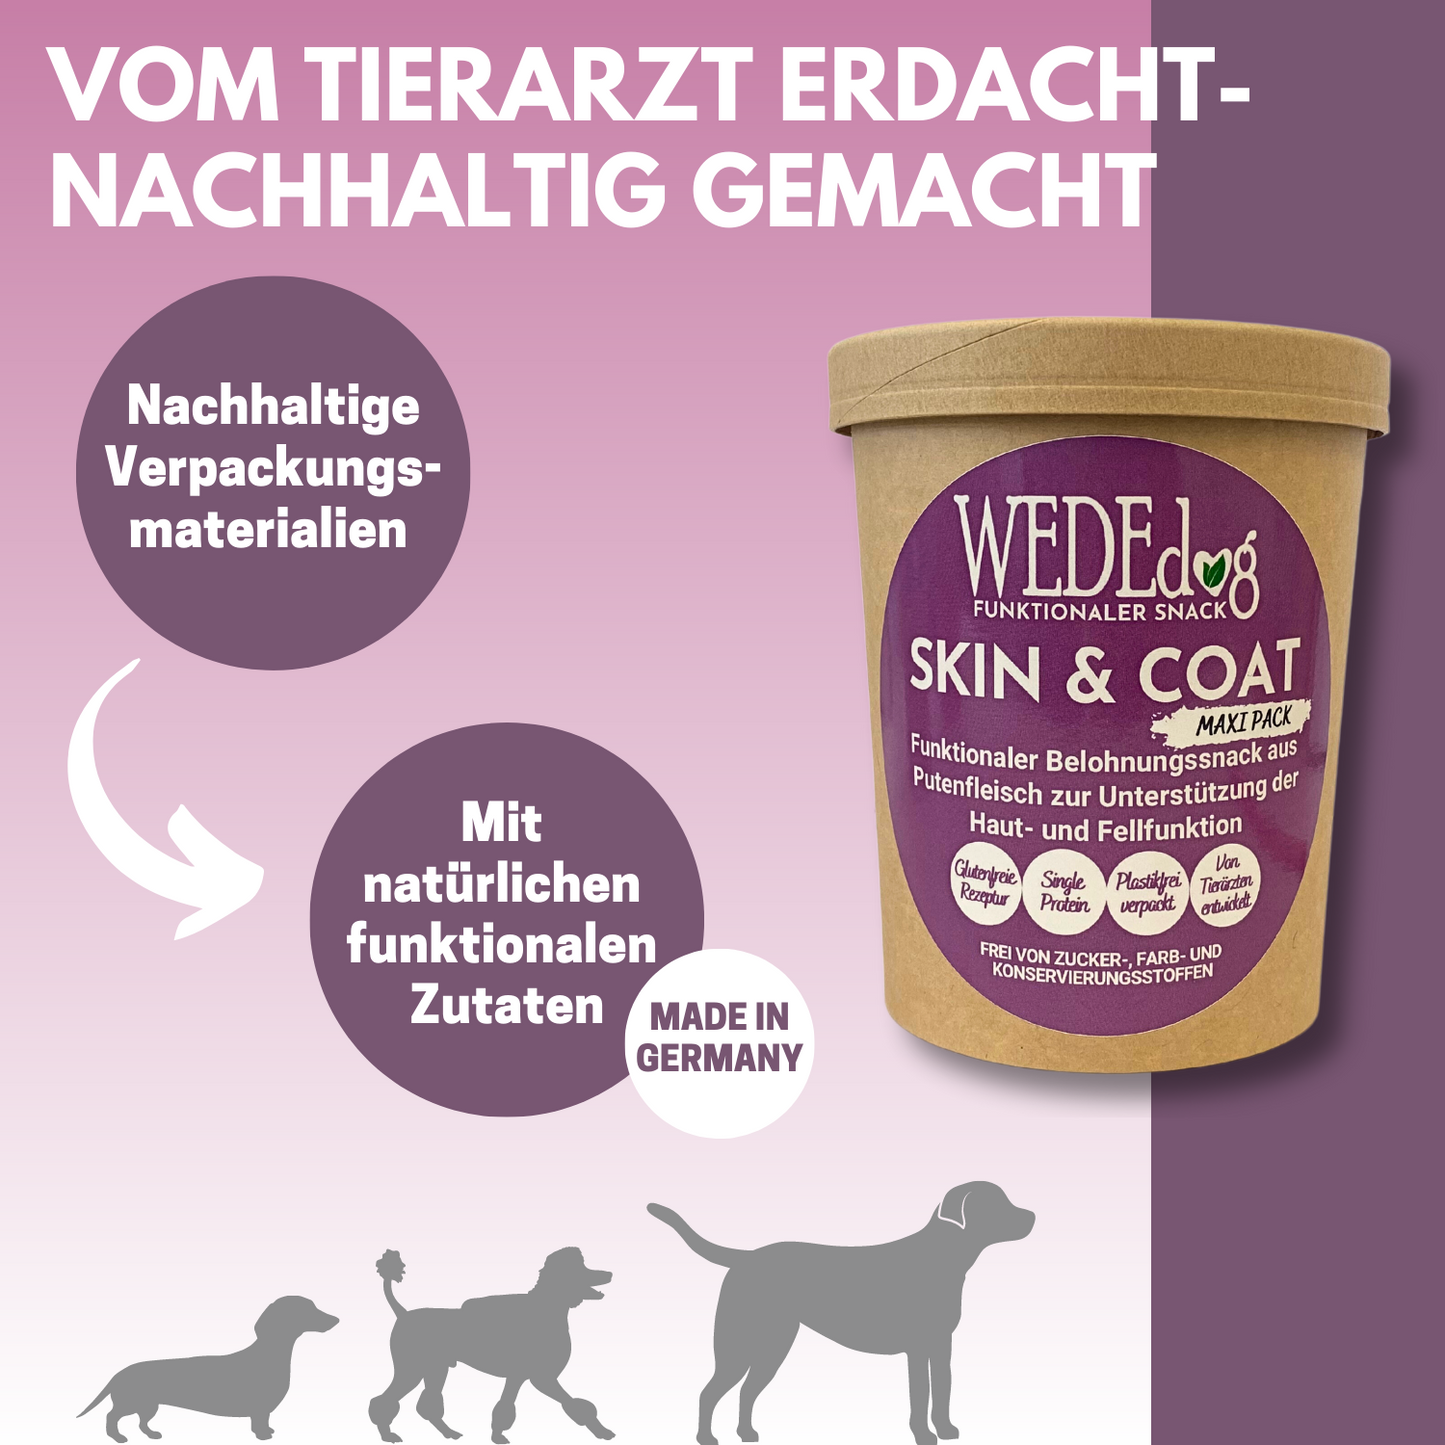 Hundekausnack I Fellpflege Hund I WEDEdog SKIN & COAT MAXI I Stoffwechsel Hund I Hunde Fellpflege I 350g